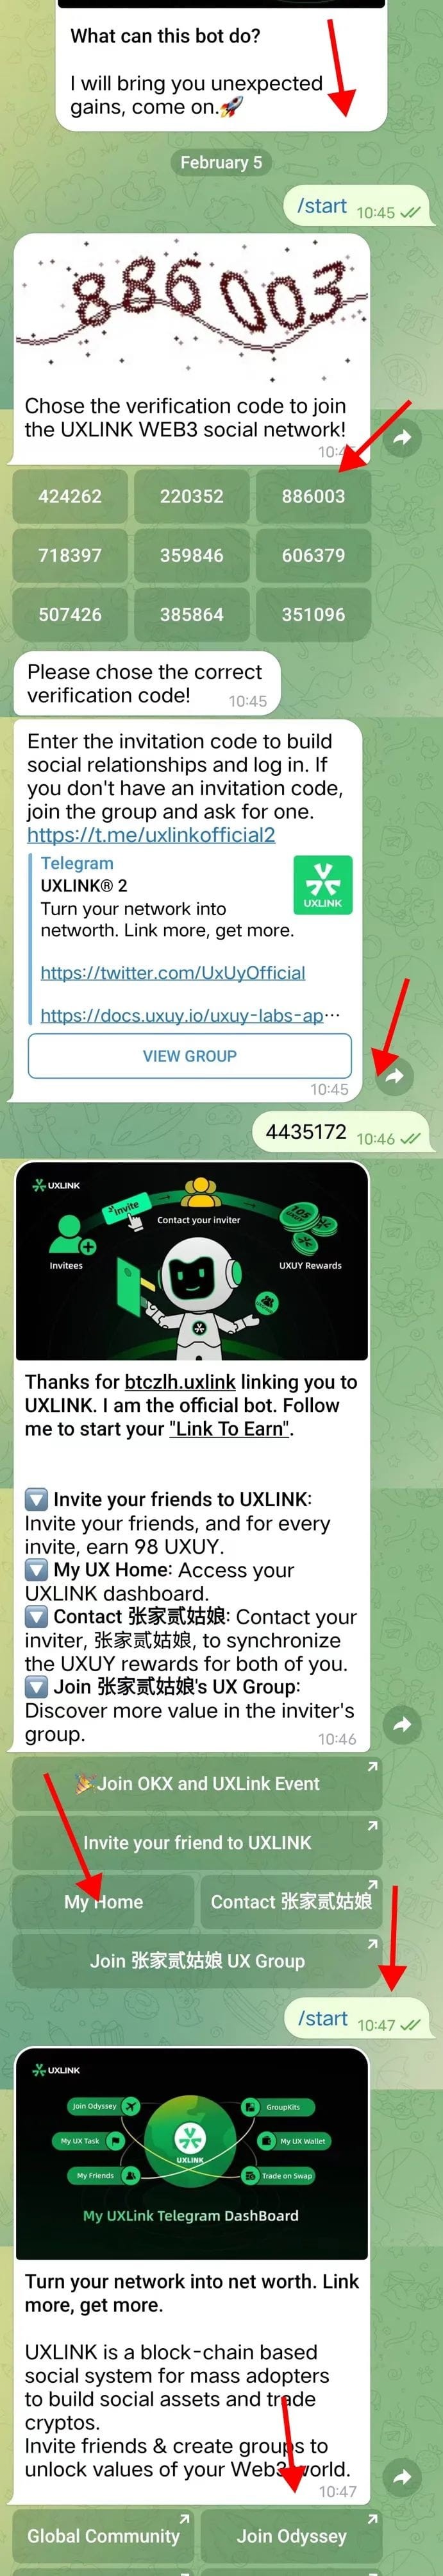 【零撸】UXLINK两个活动总共空投近200枚UXUY：奥德赛98枚（详细教程）；体验任务每天最高1